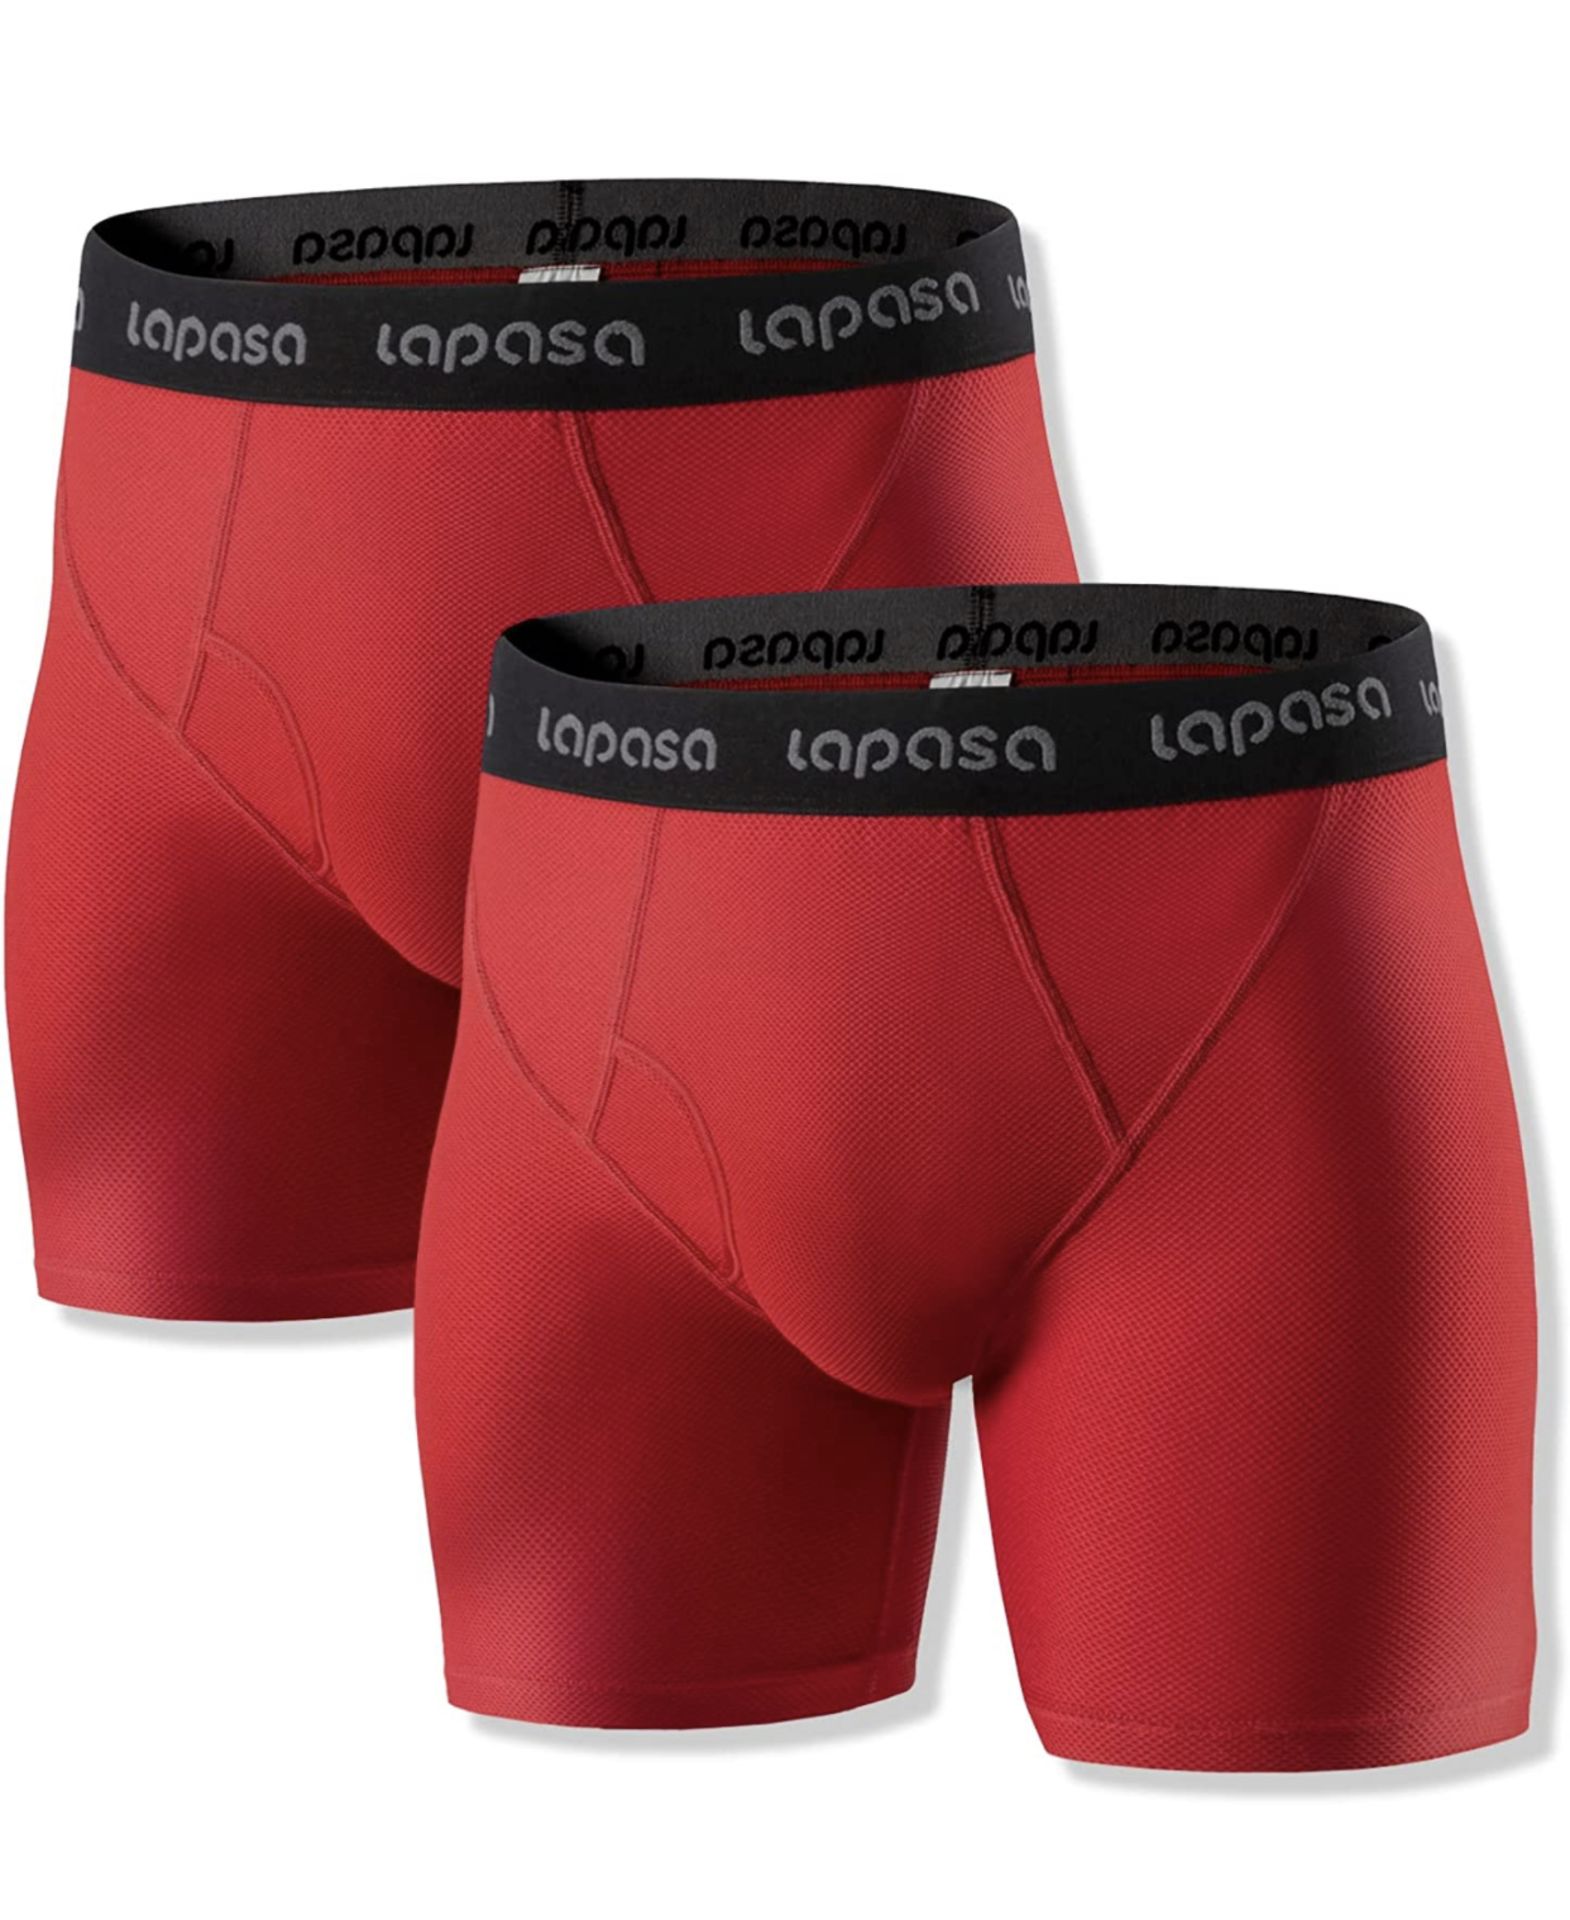 Lapasa Men's Sports Boxer Shorts 2-Pack, Medium RRP £20.99